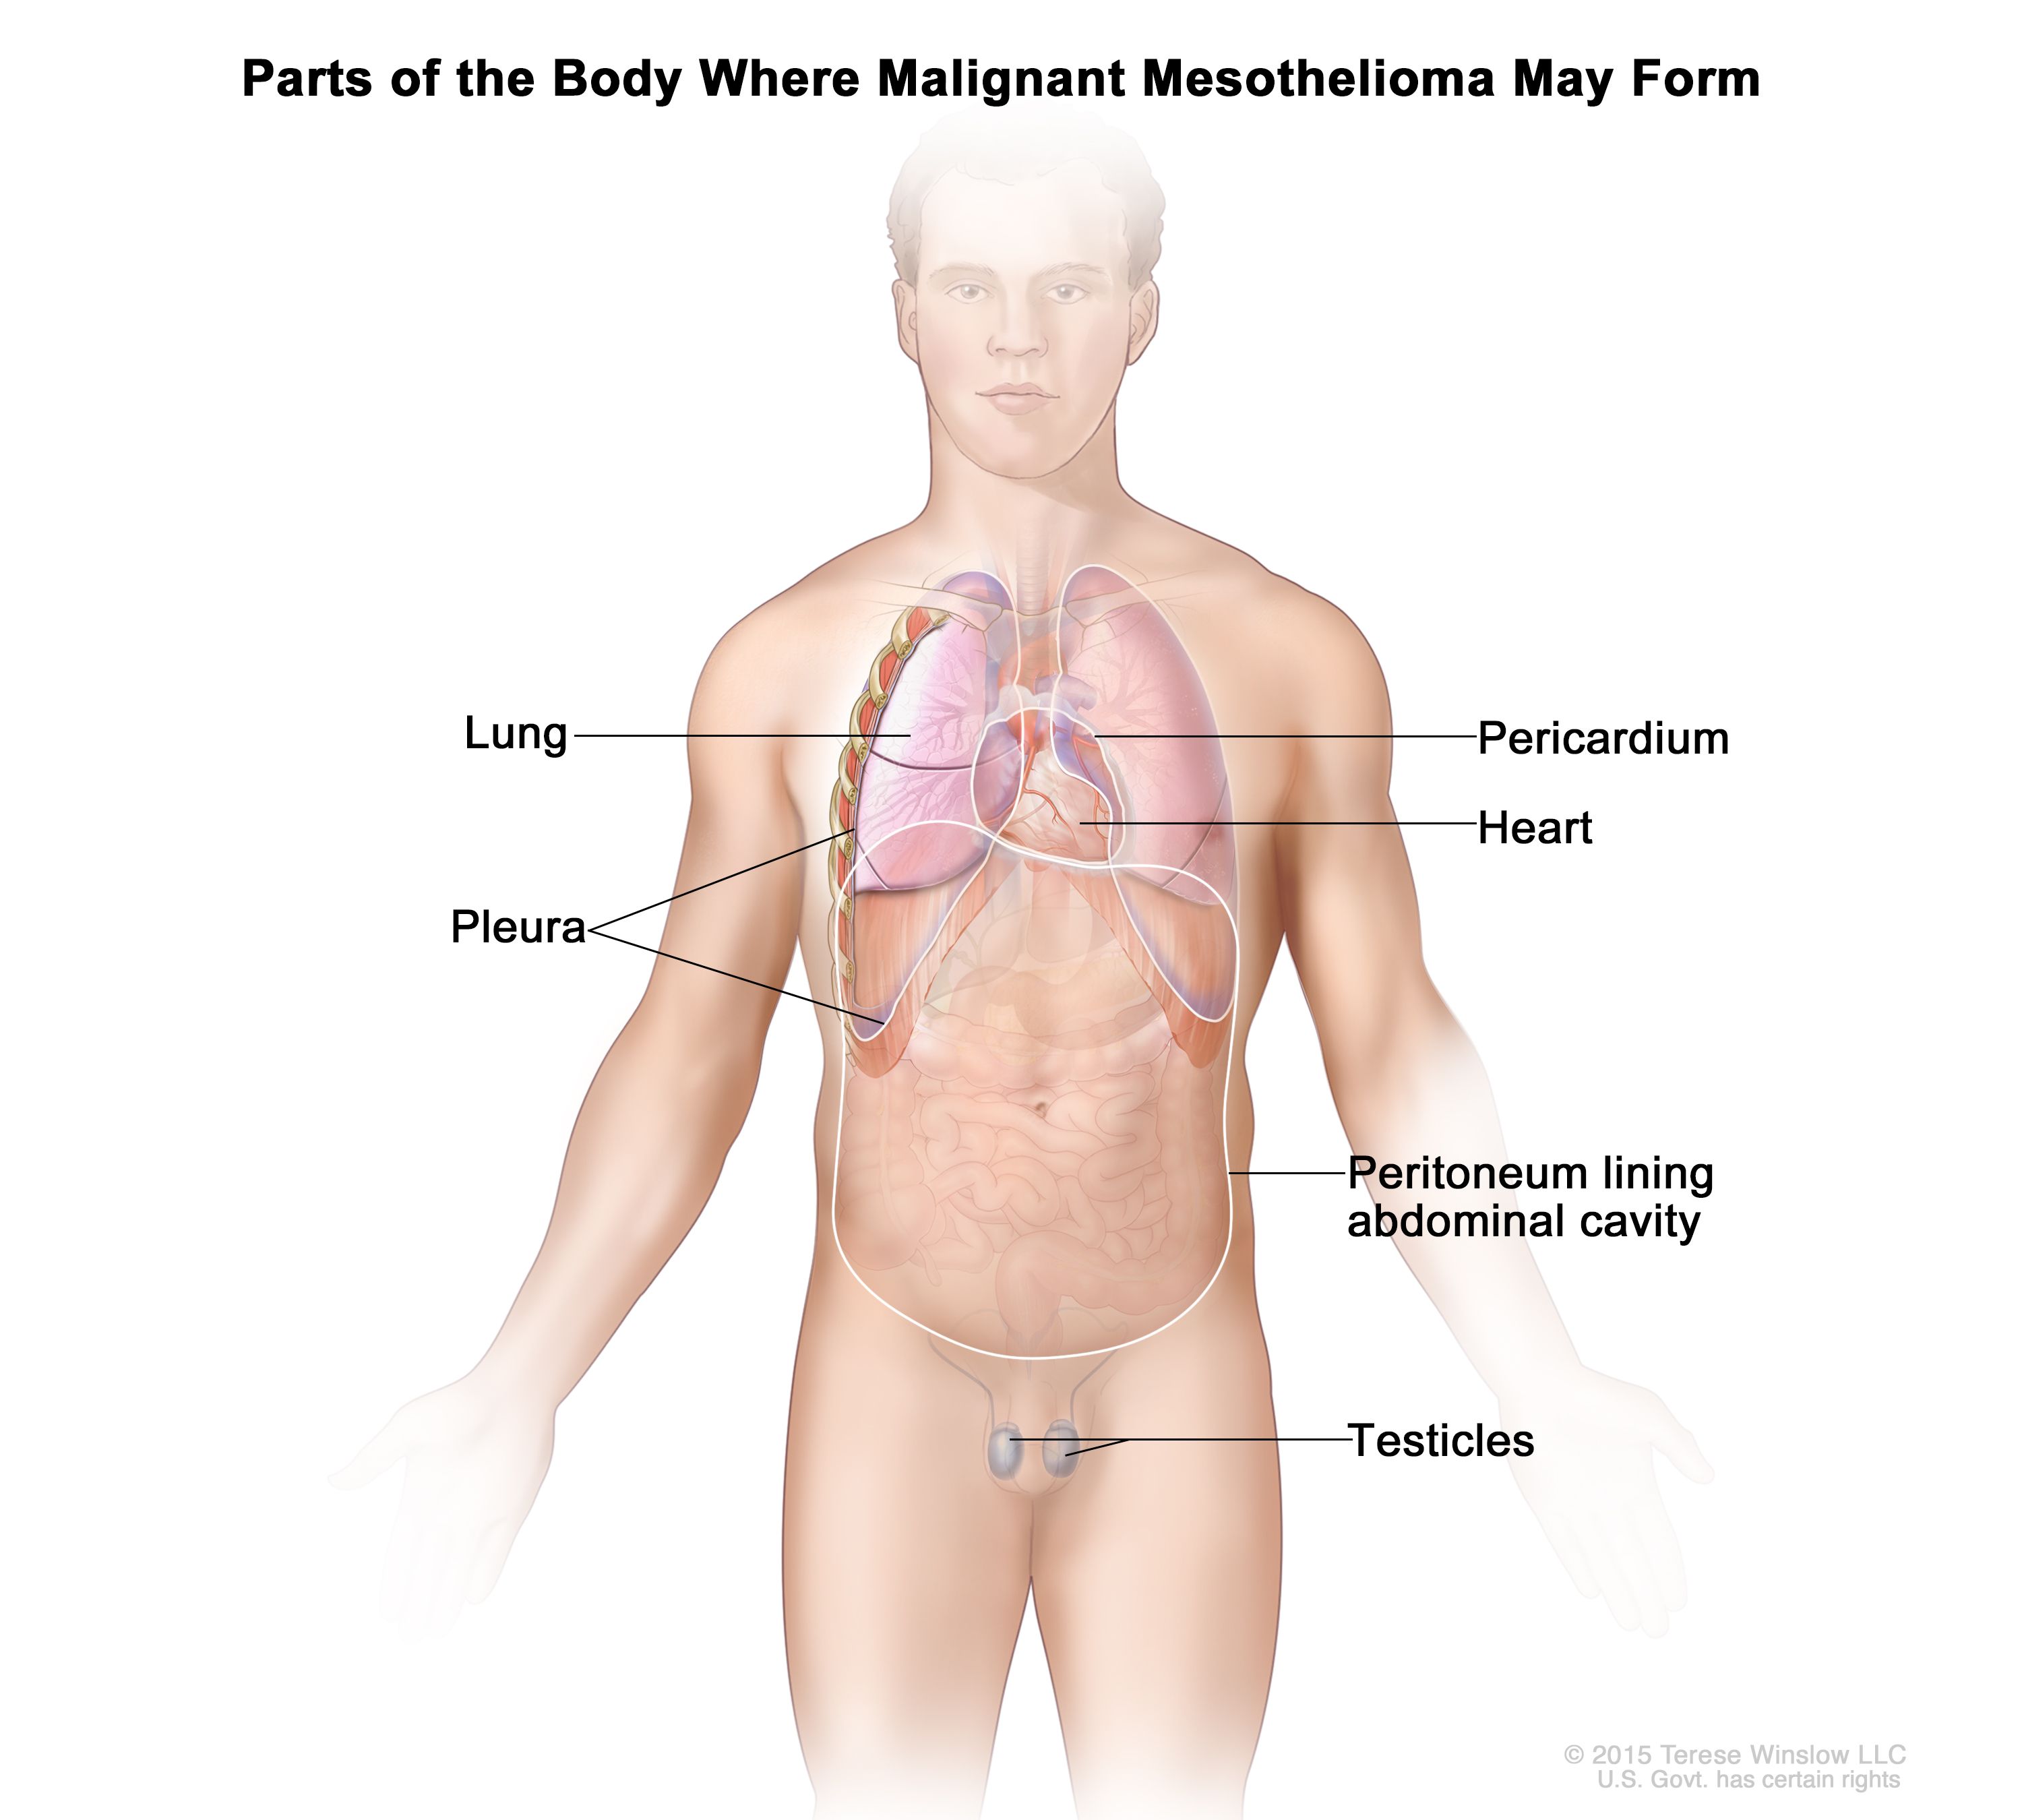 Thoracic Oncology Program Malignant Mesothelioma